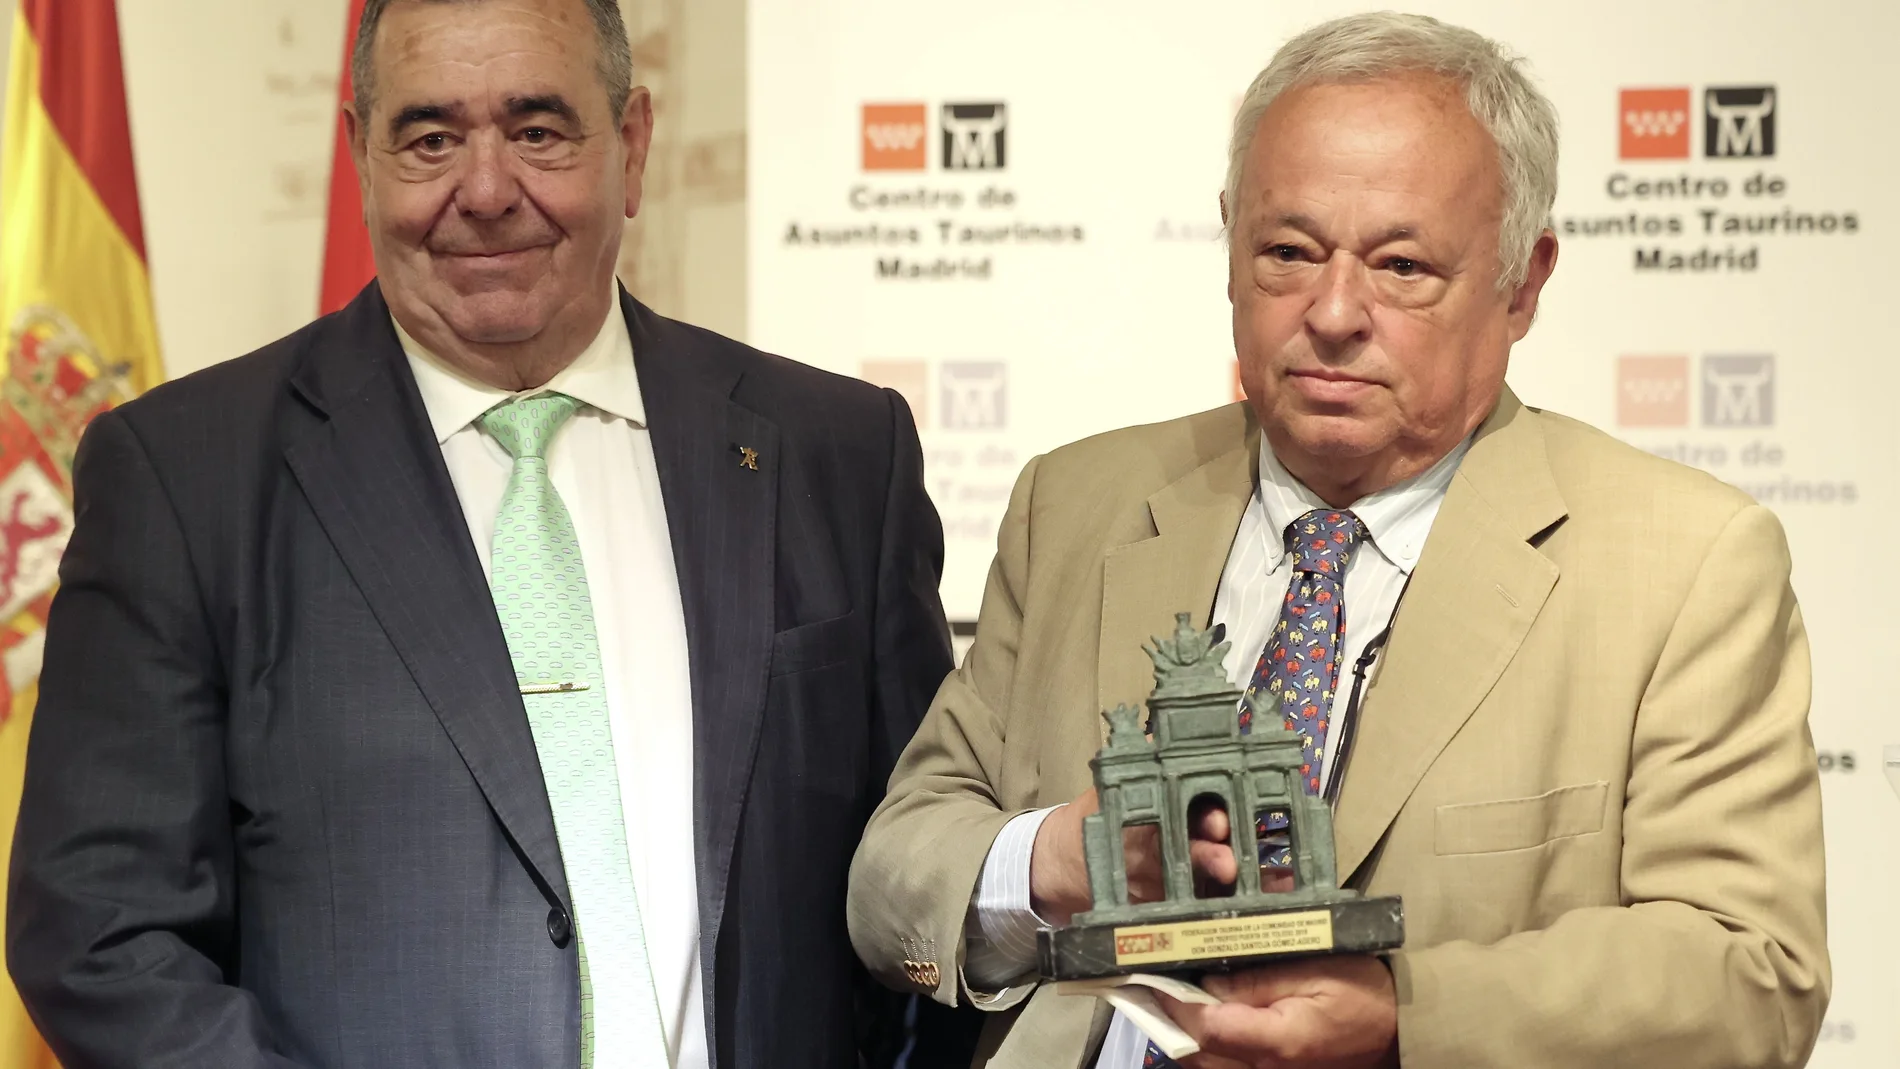 Premio del Centro de Asuntos Taurinos de Madrid al Consejero de Cultura de la Junta de Castilla y León, Gonzalo Santonja.